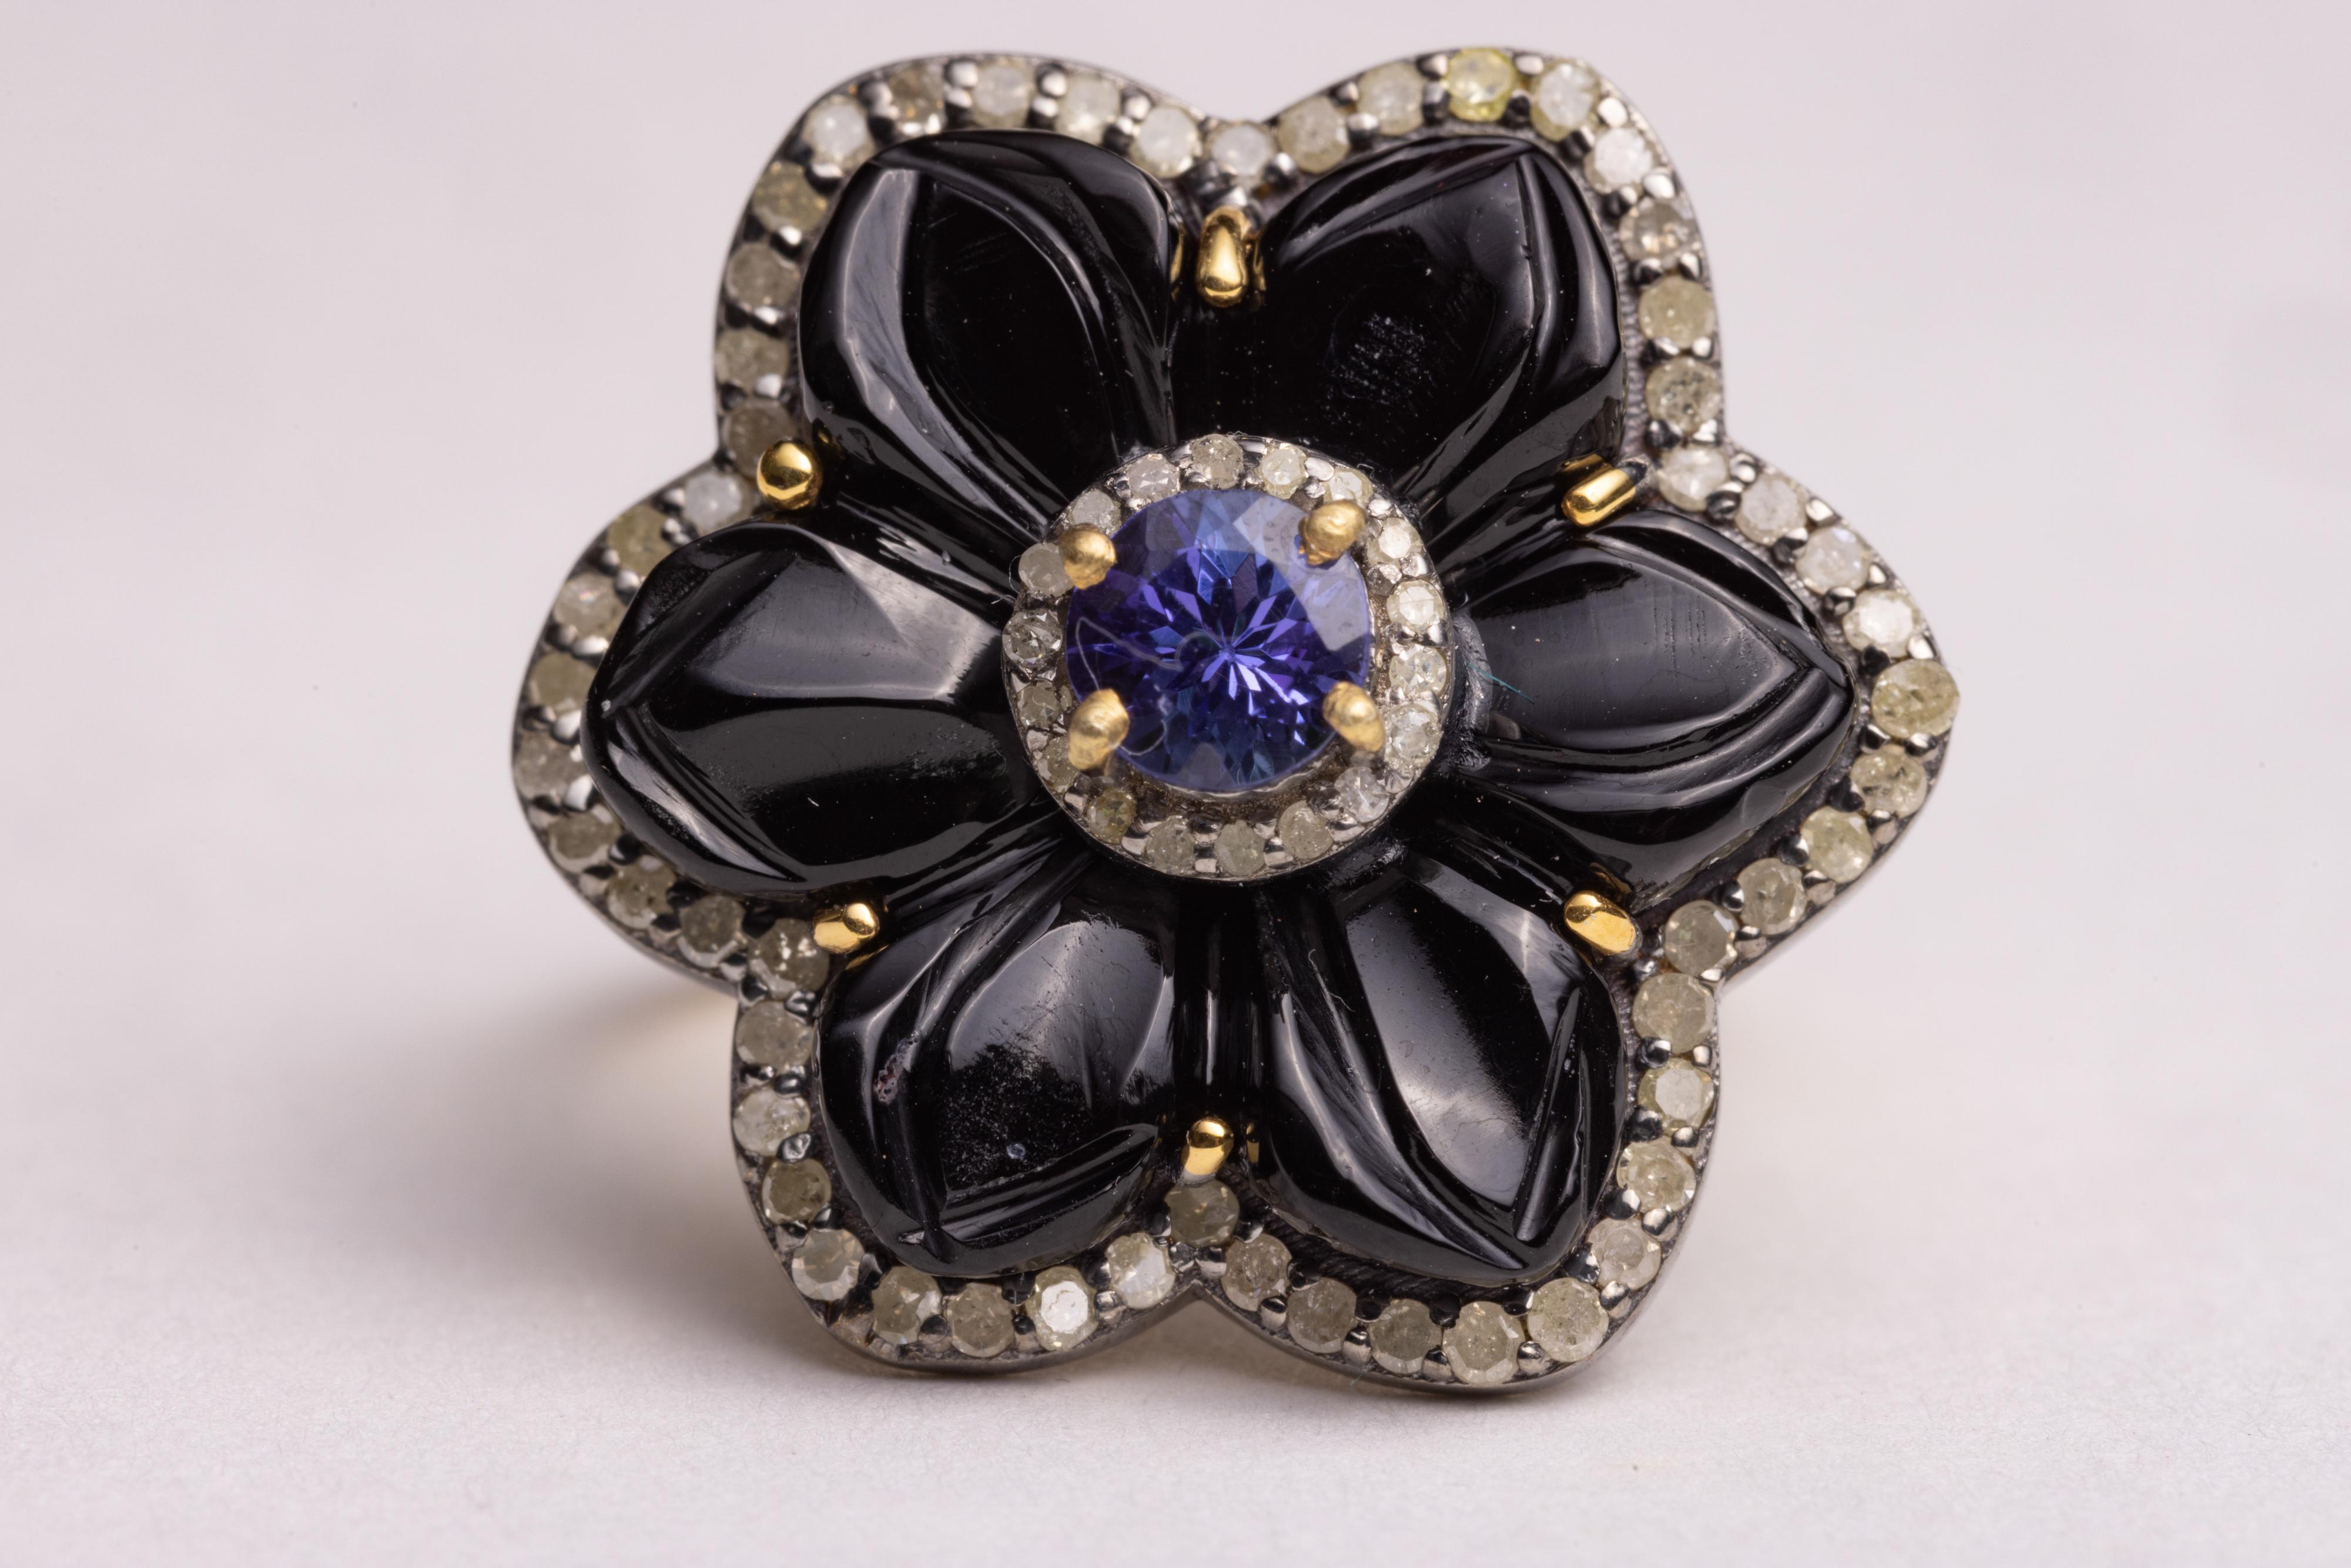 Bague de cocktail à motif floral en onyx noir taillé en forme de pétales de fleurs, bordée de diamants ronds de taille brillant et ornée au centre d'une pierre précieuse Tanzanite ronde à facettes. Bracelet en or 18K vermeil.  Les diamants